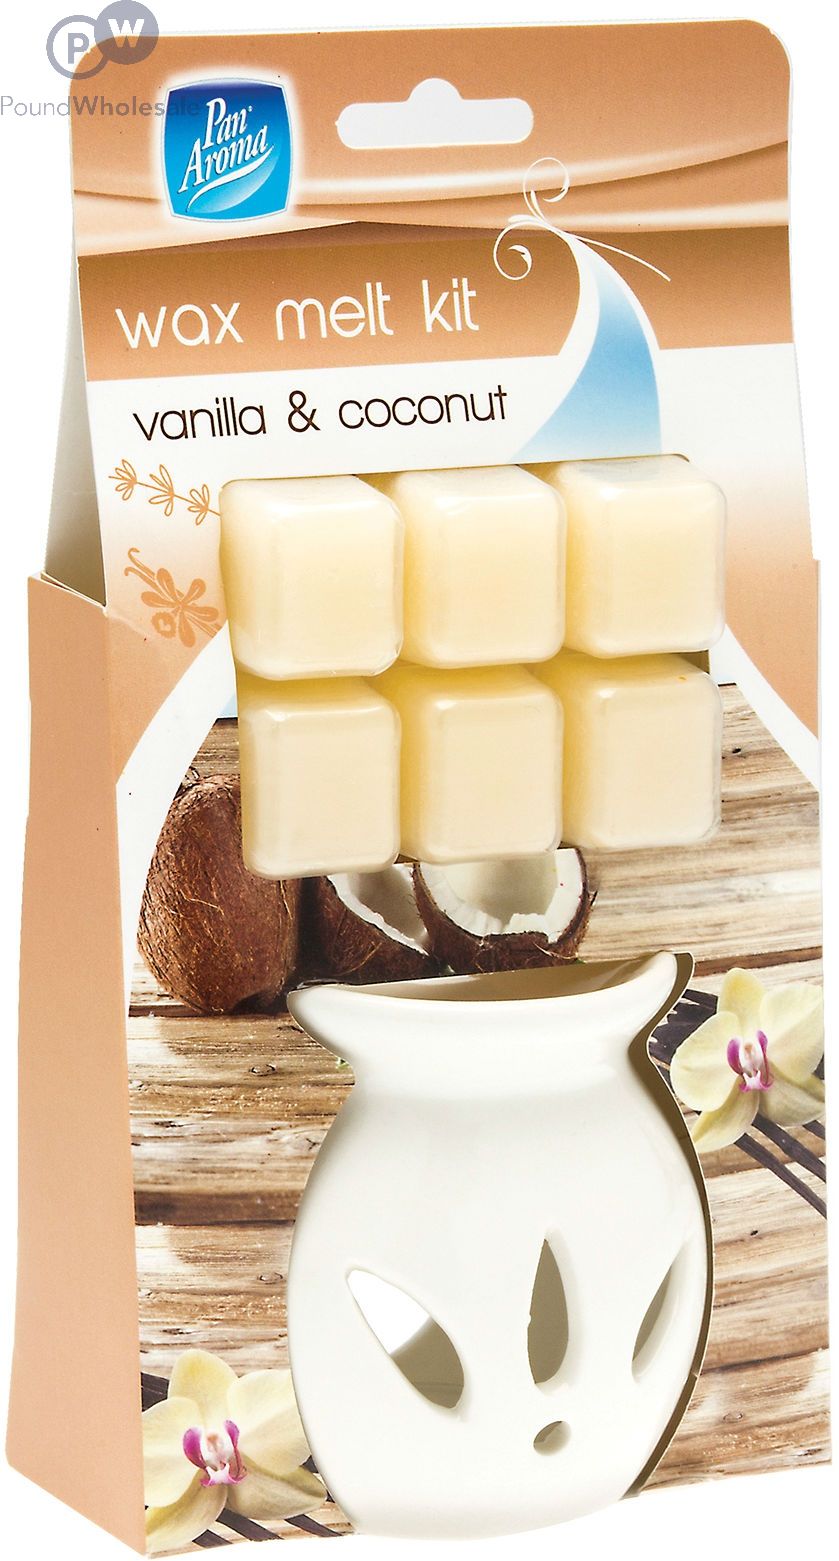 Wholesale Pan Aroma Wax Melt Kit Vanilla & Coconut 6-pack